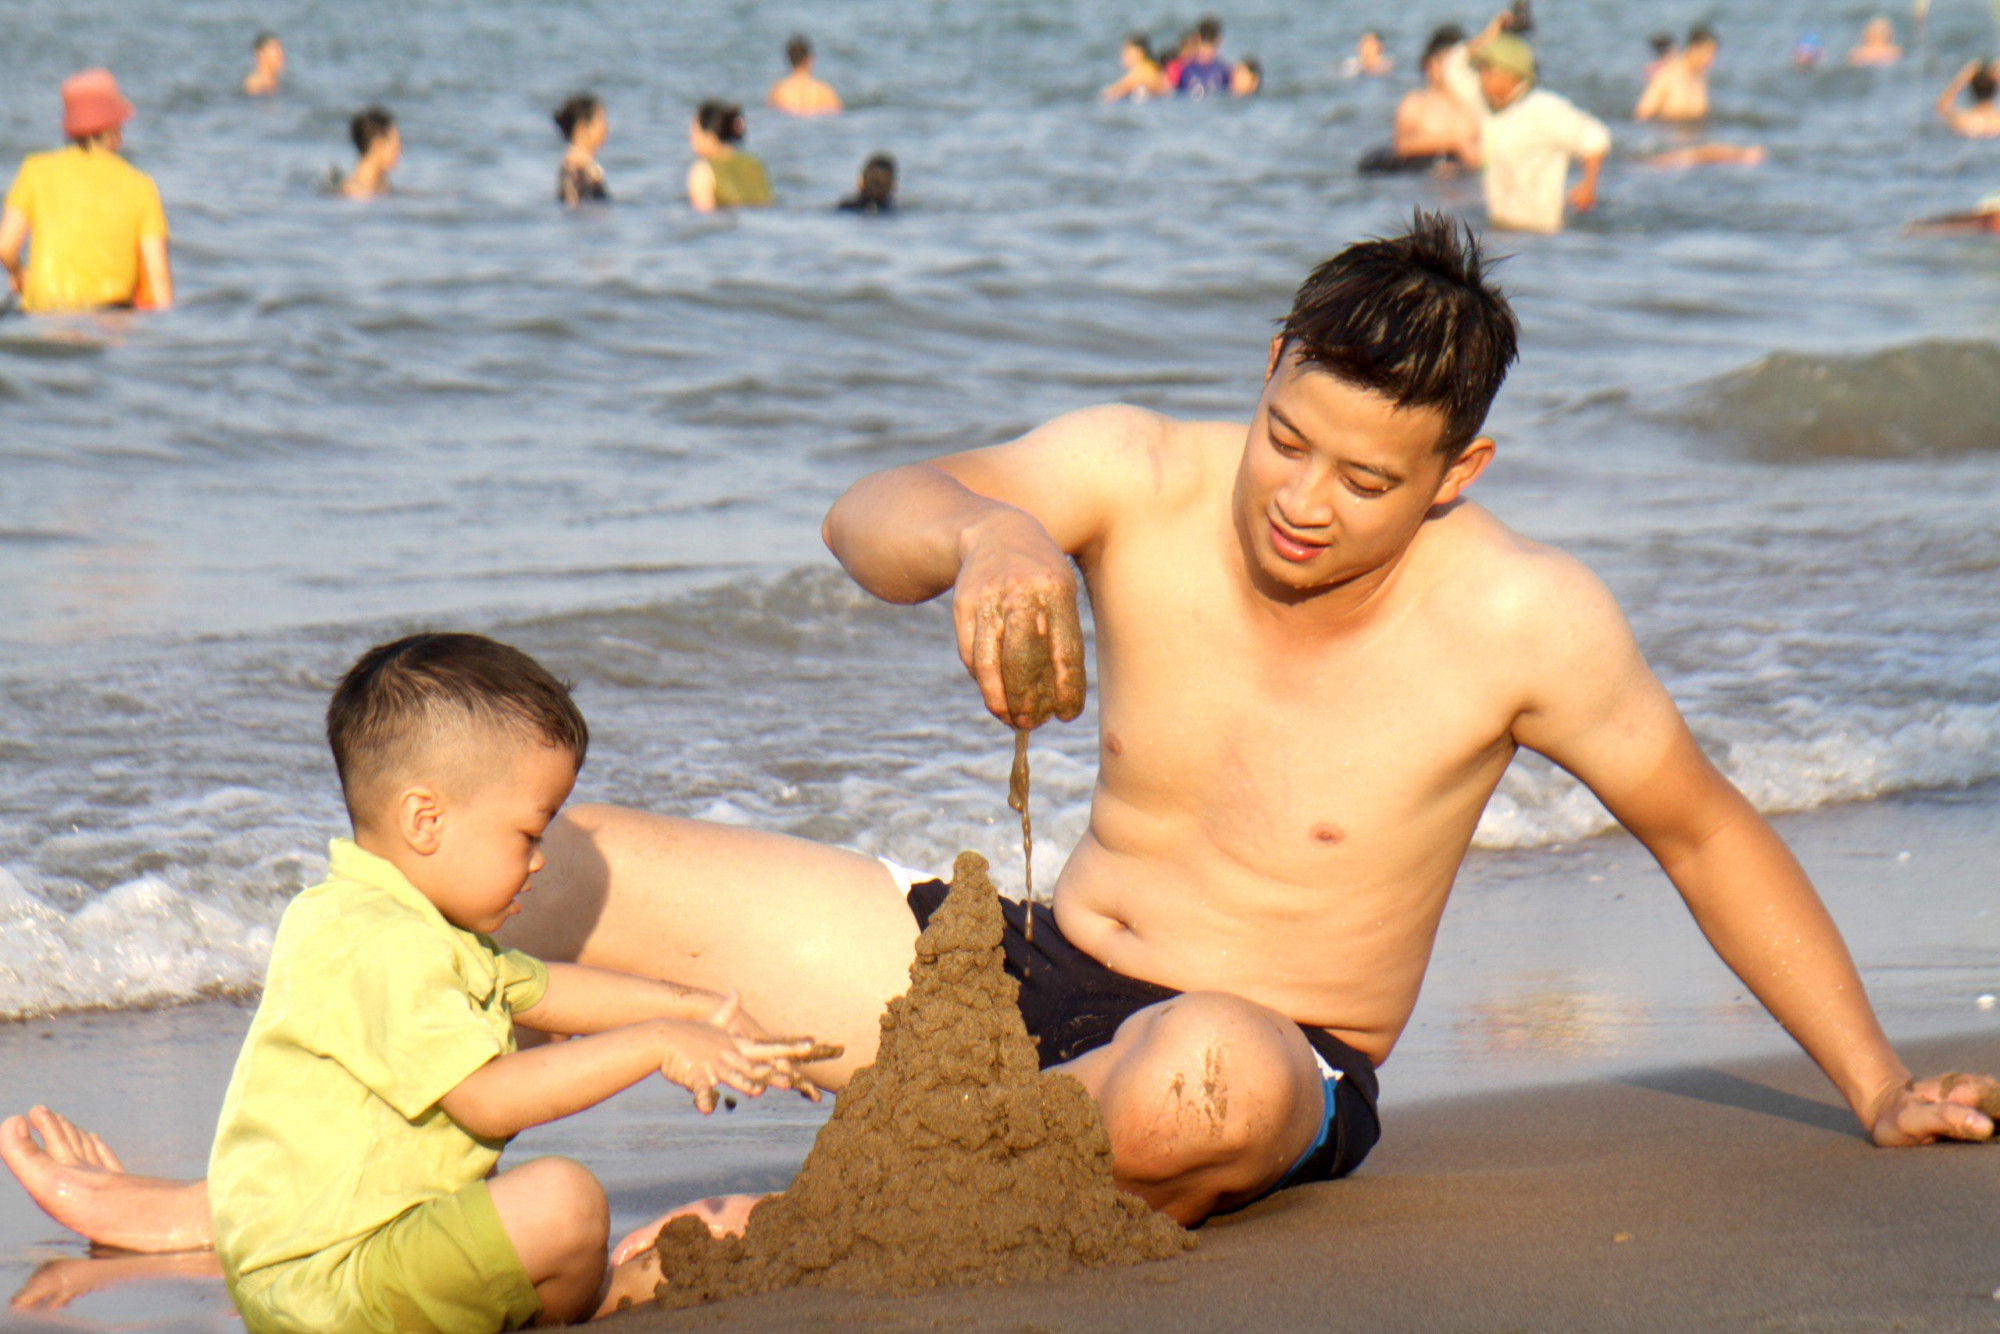 Thời tiết nắng nóng, nhiều du khách chọn bãi biển làm nơi tắm mát trong những ngày đầu nghỉ lễ 2/9 - Ảnh: Phan Ngọc